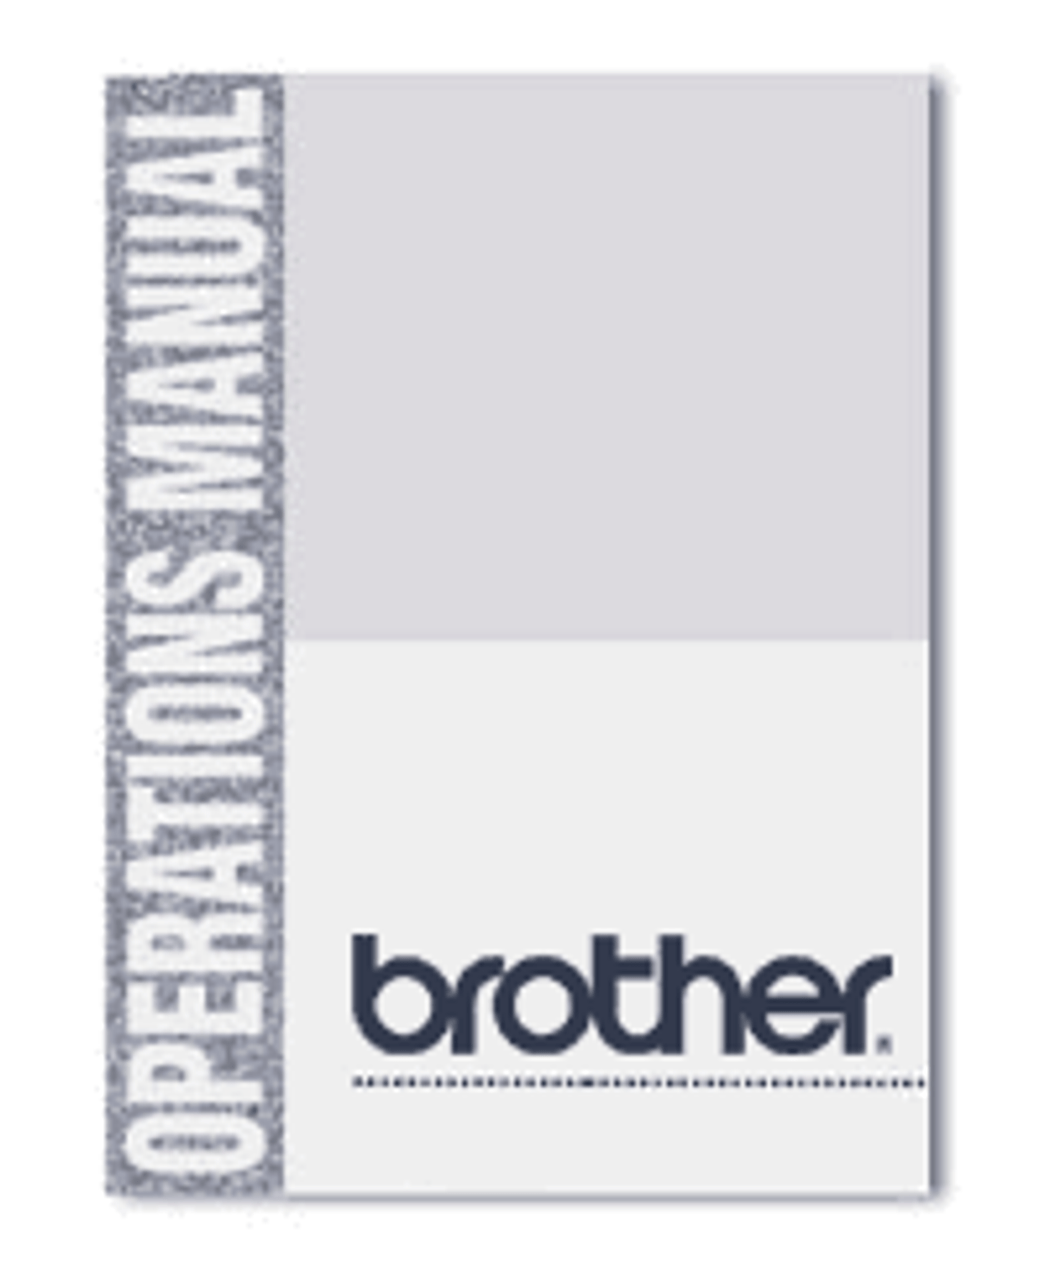 Brother PTD210 User Manual Manual